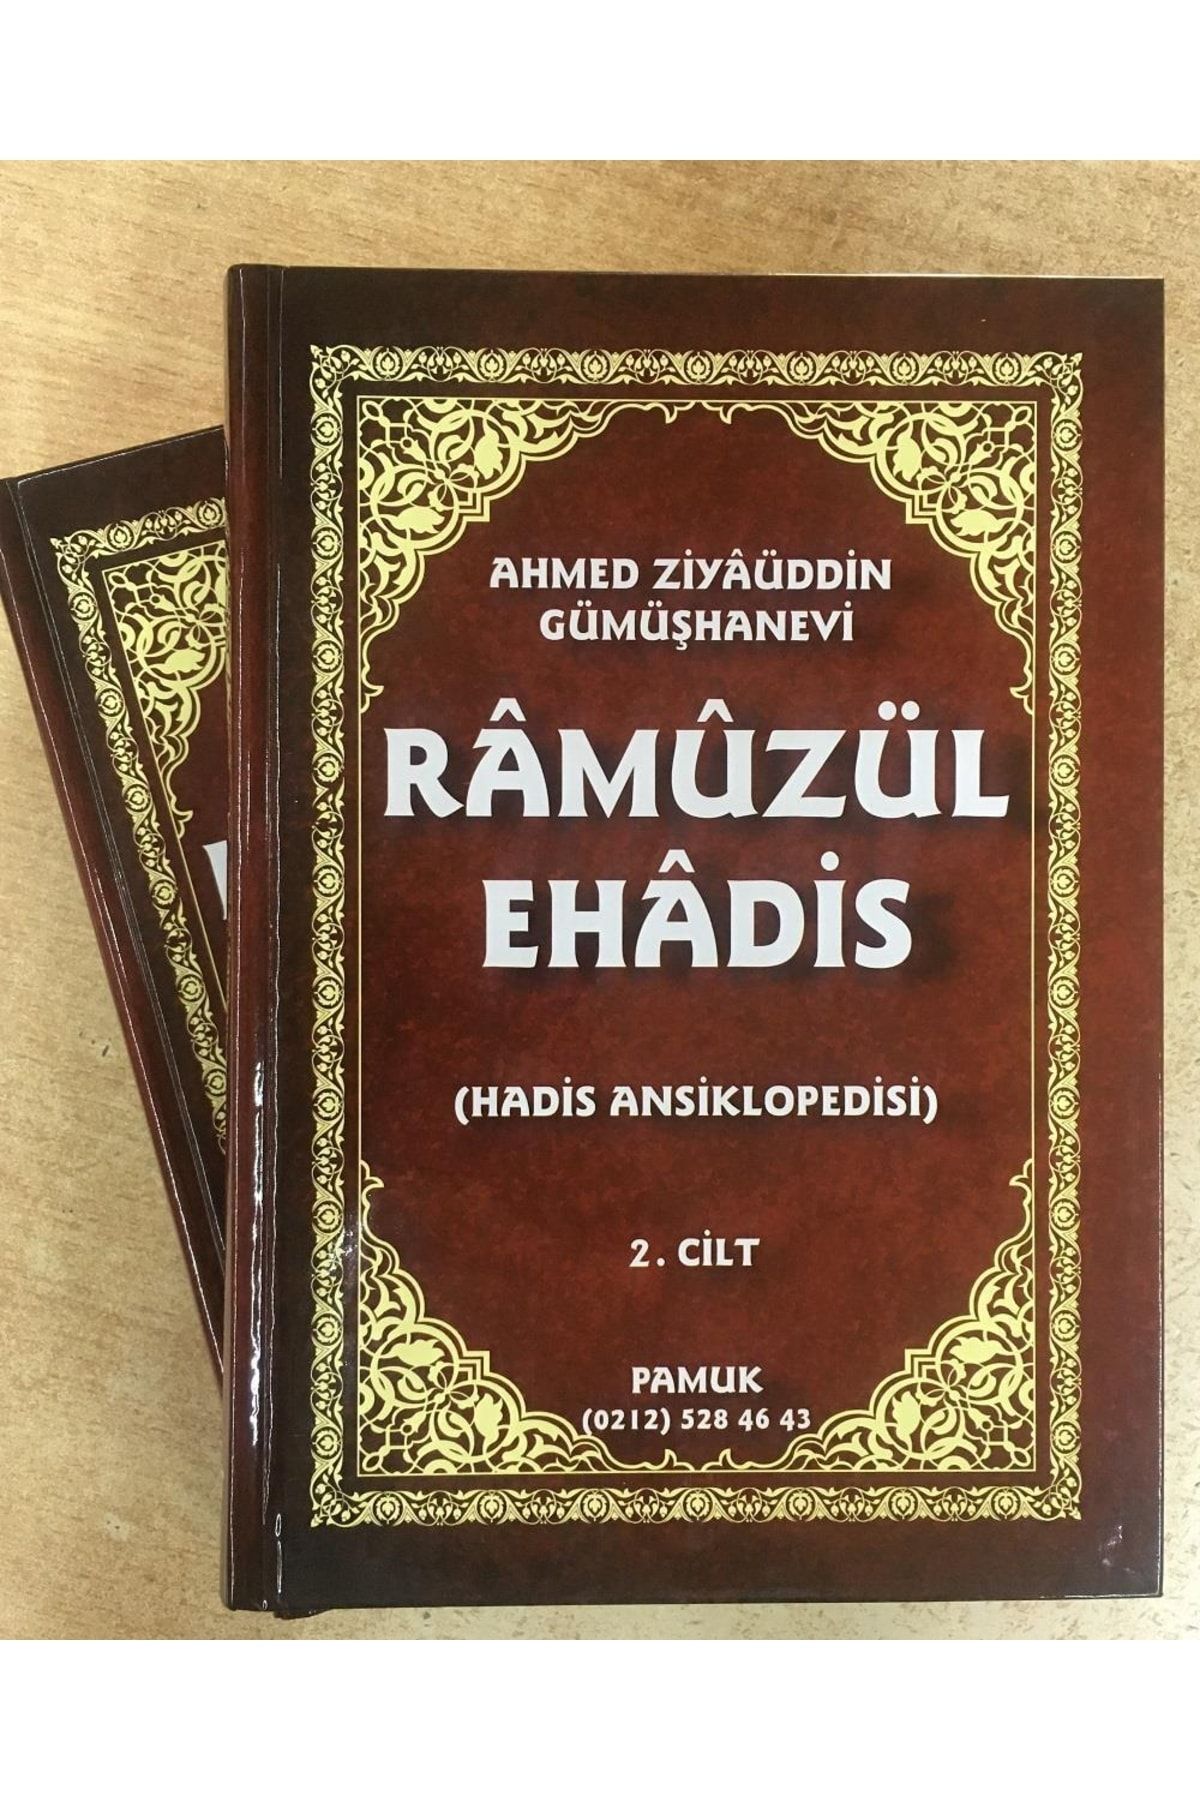 Pamuk Yayıncılık Ramuzül Ehadis, 2 Cilt, Ahmed Ziyaüddin Gümüşhanevi, Arapça-türkçe, Pamuk